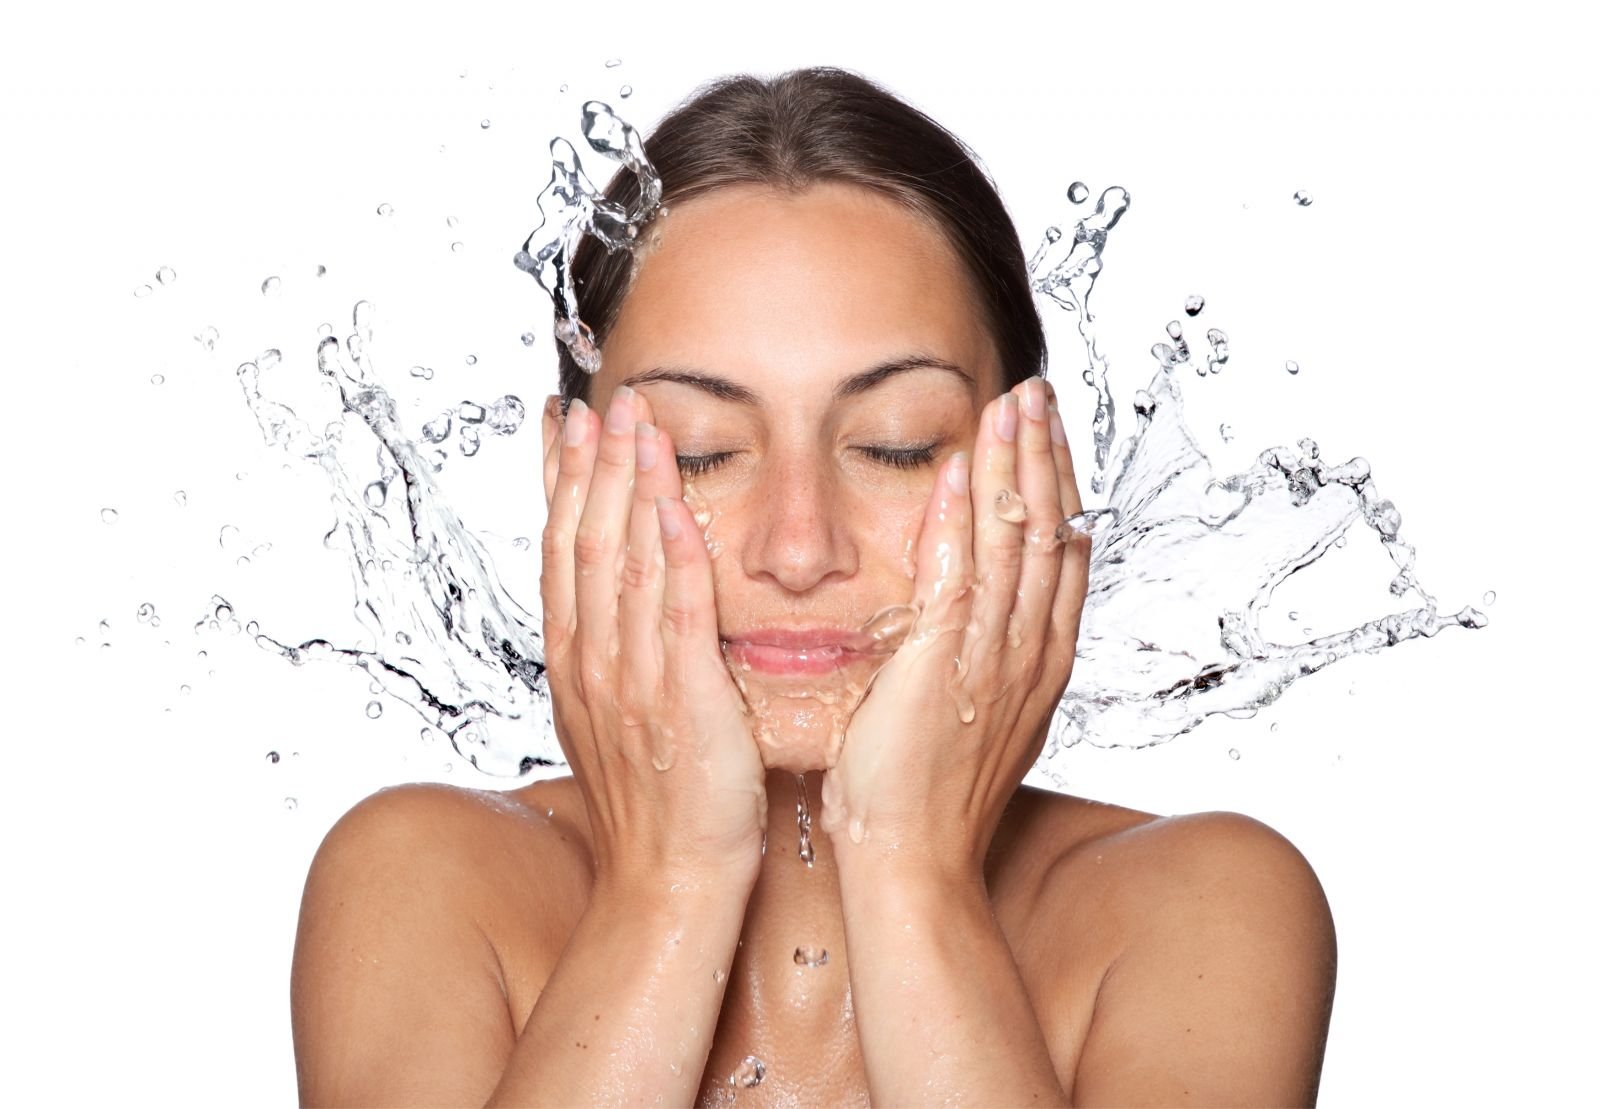 Beneficio de lavarse la cara con agua fria